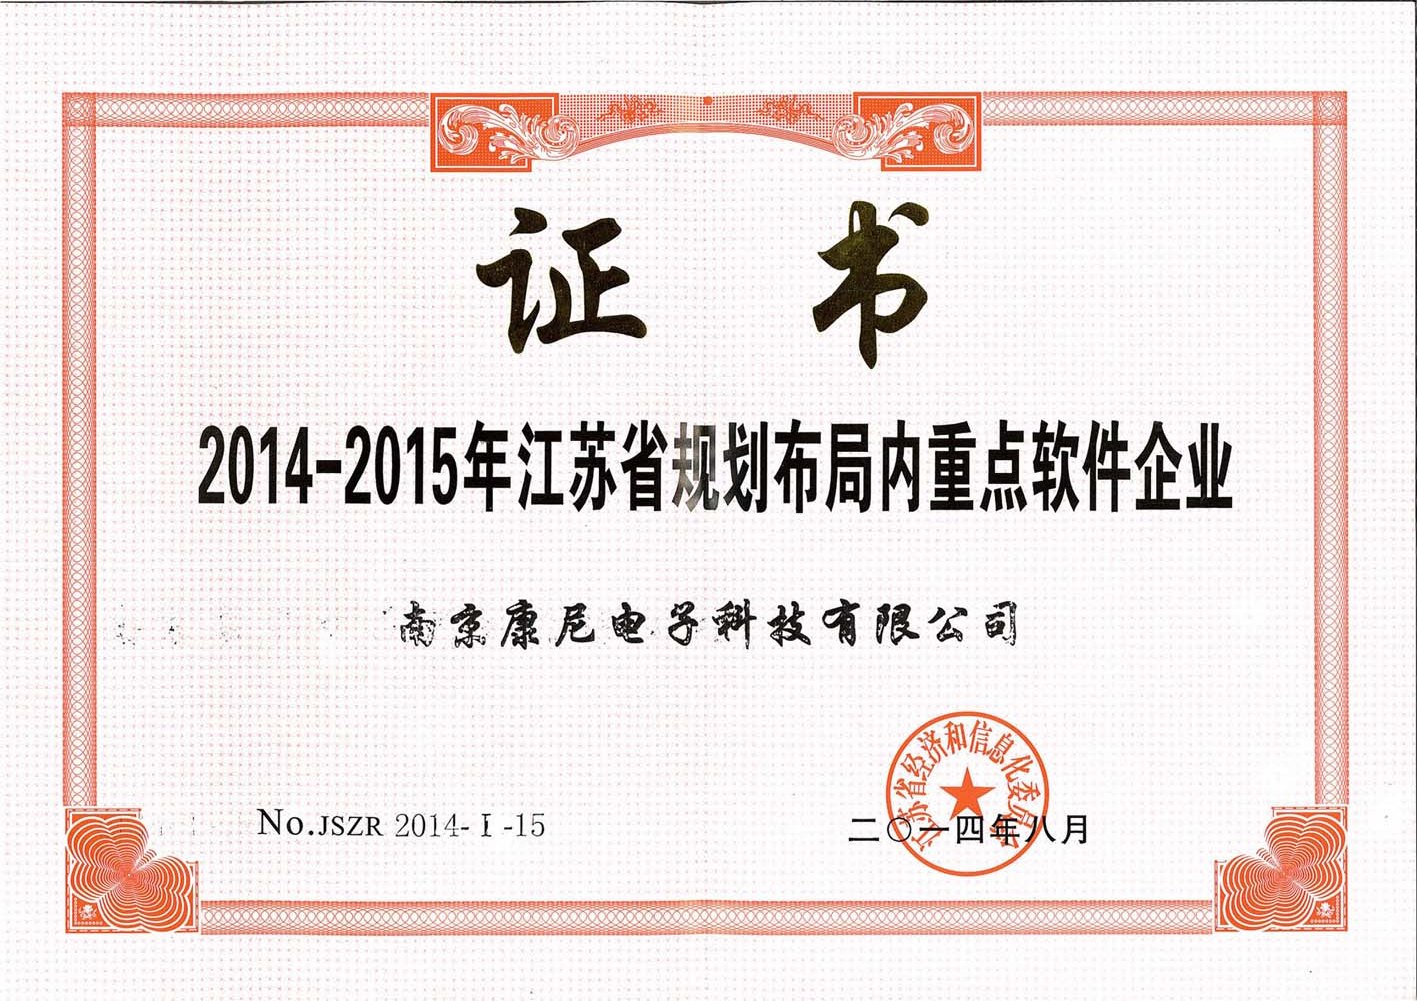 2014-2015年江苏省规划布局内重点软件企业证书